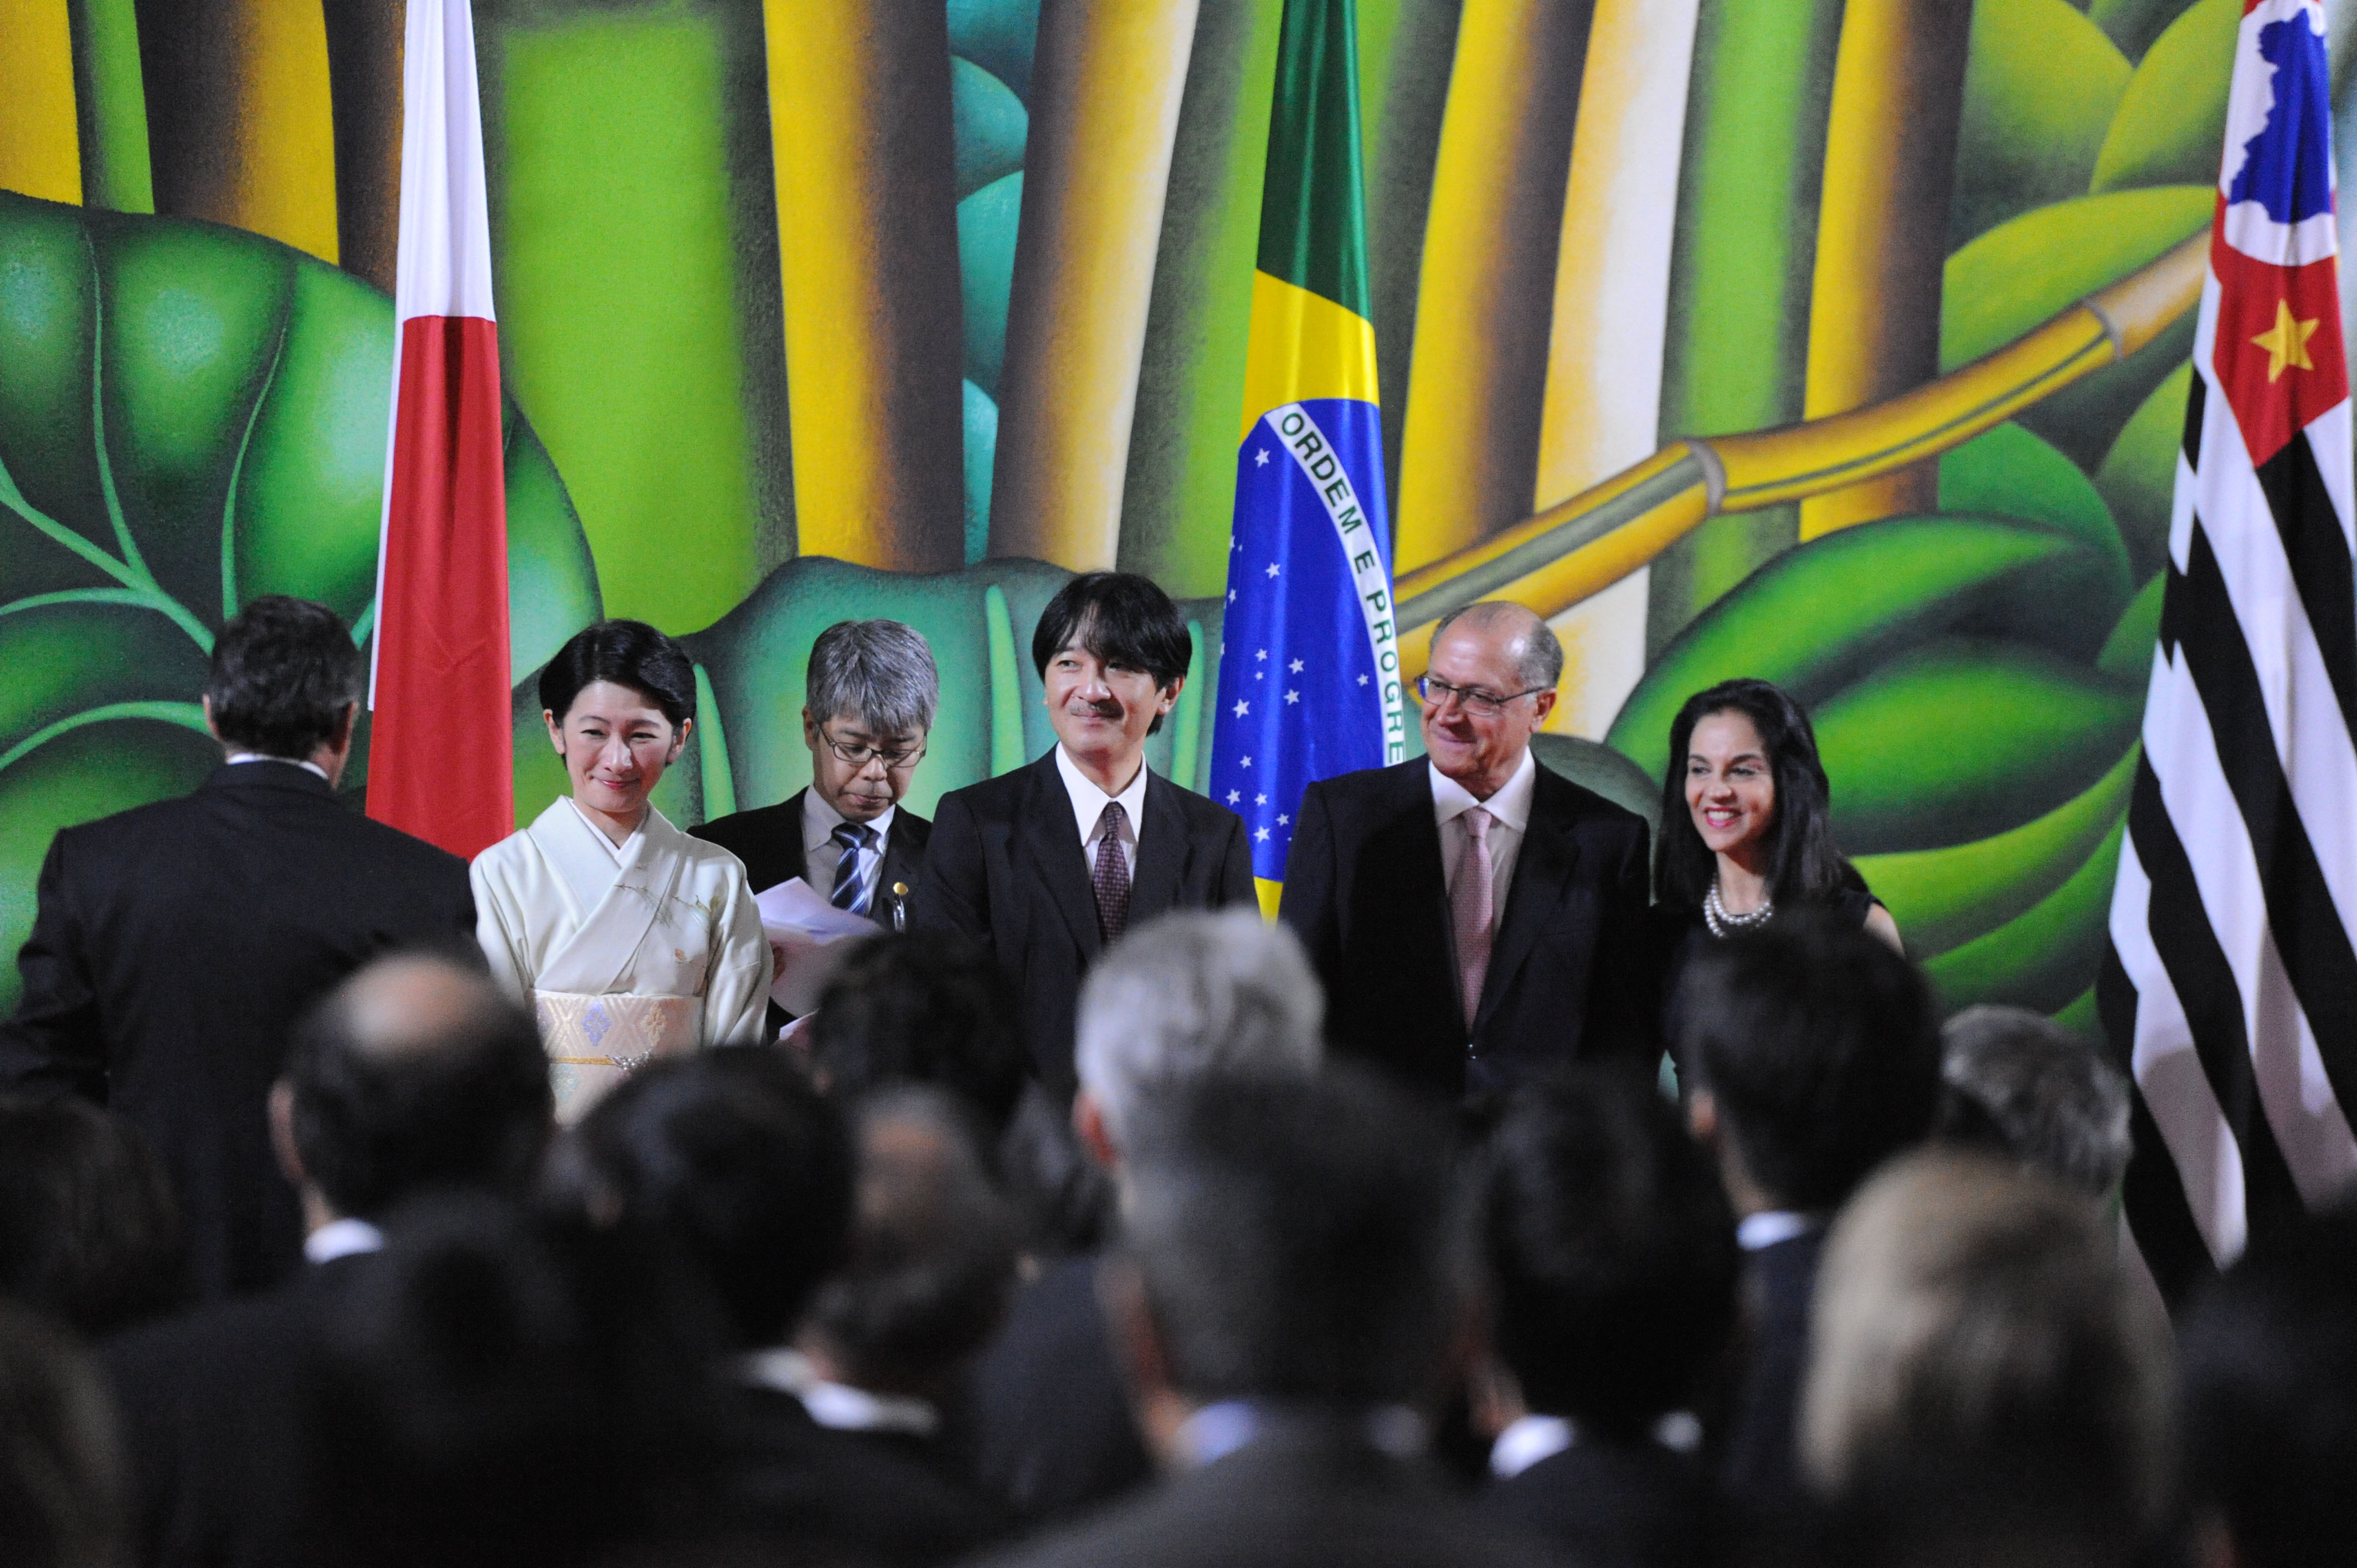 Prncipes do Japo na solenidade que marca os 120 anos do acordo bilateral entre Brasil e Japo <a style='float:right;color:#ccc' href='https://www3.al.sp.gov.br/repositorio/noticia/N-10-2015/fg177771.jpg' target=_blank><i class='bi bi-zoom-in'></i> Clique para ver a imagem </a>